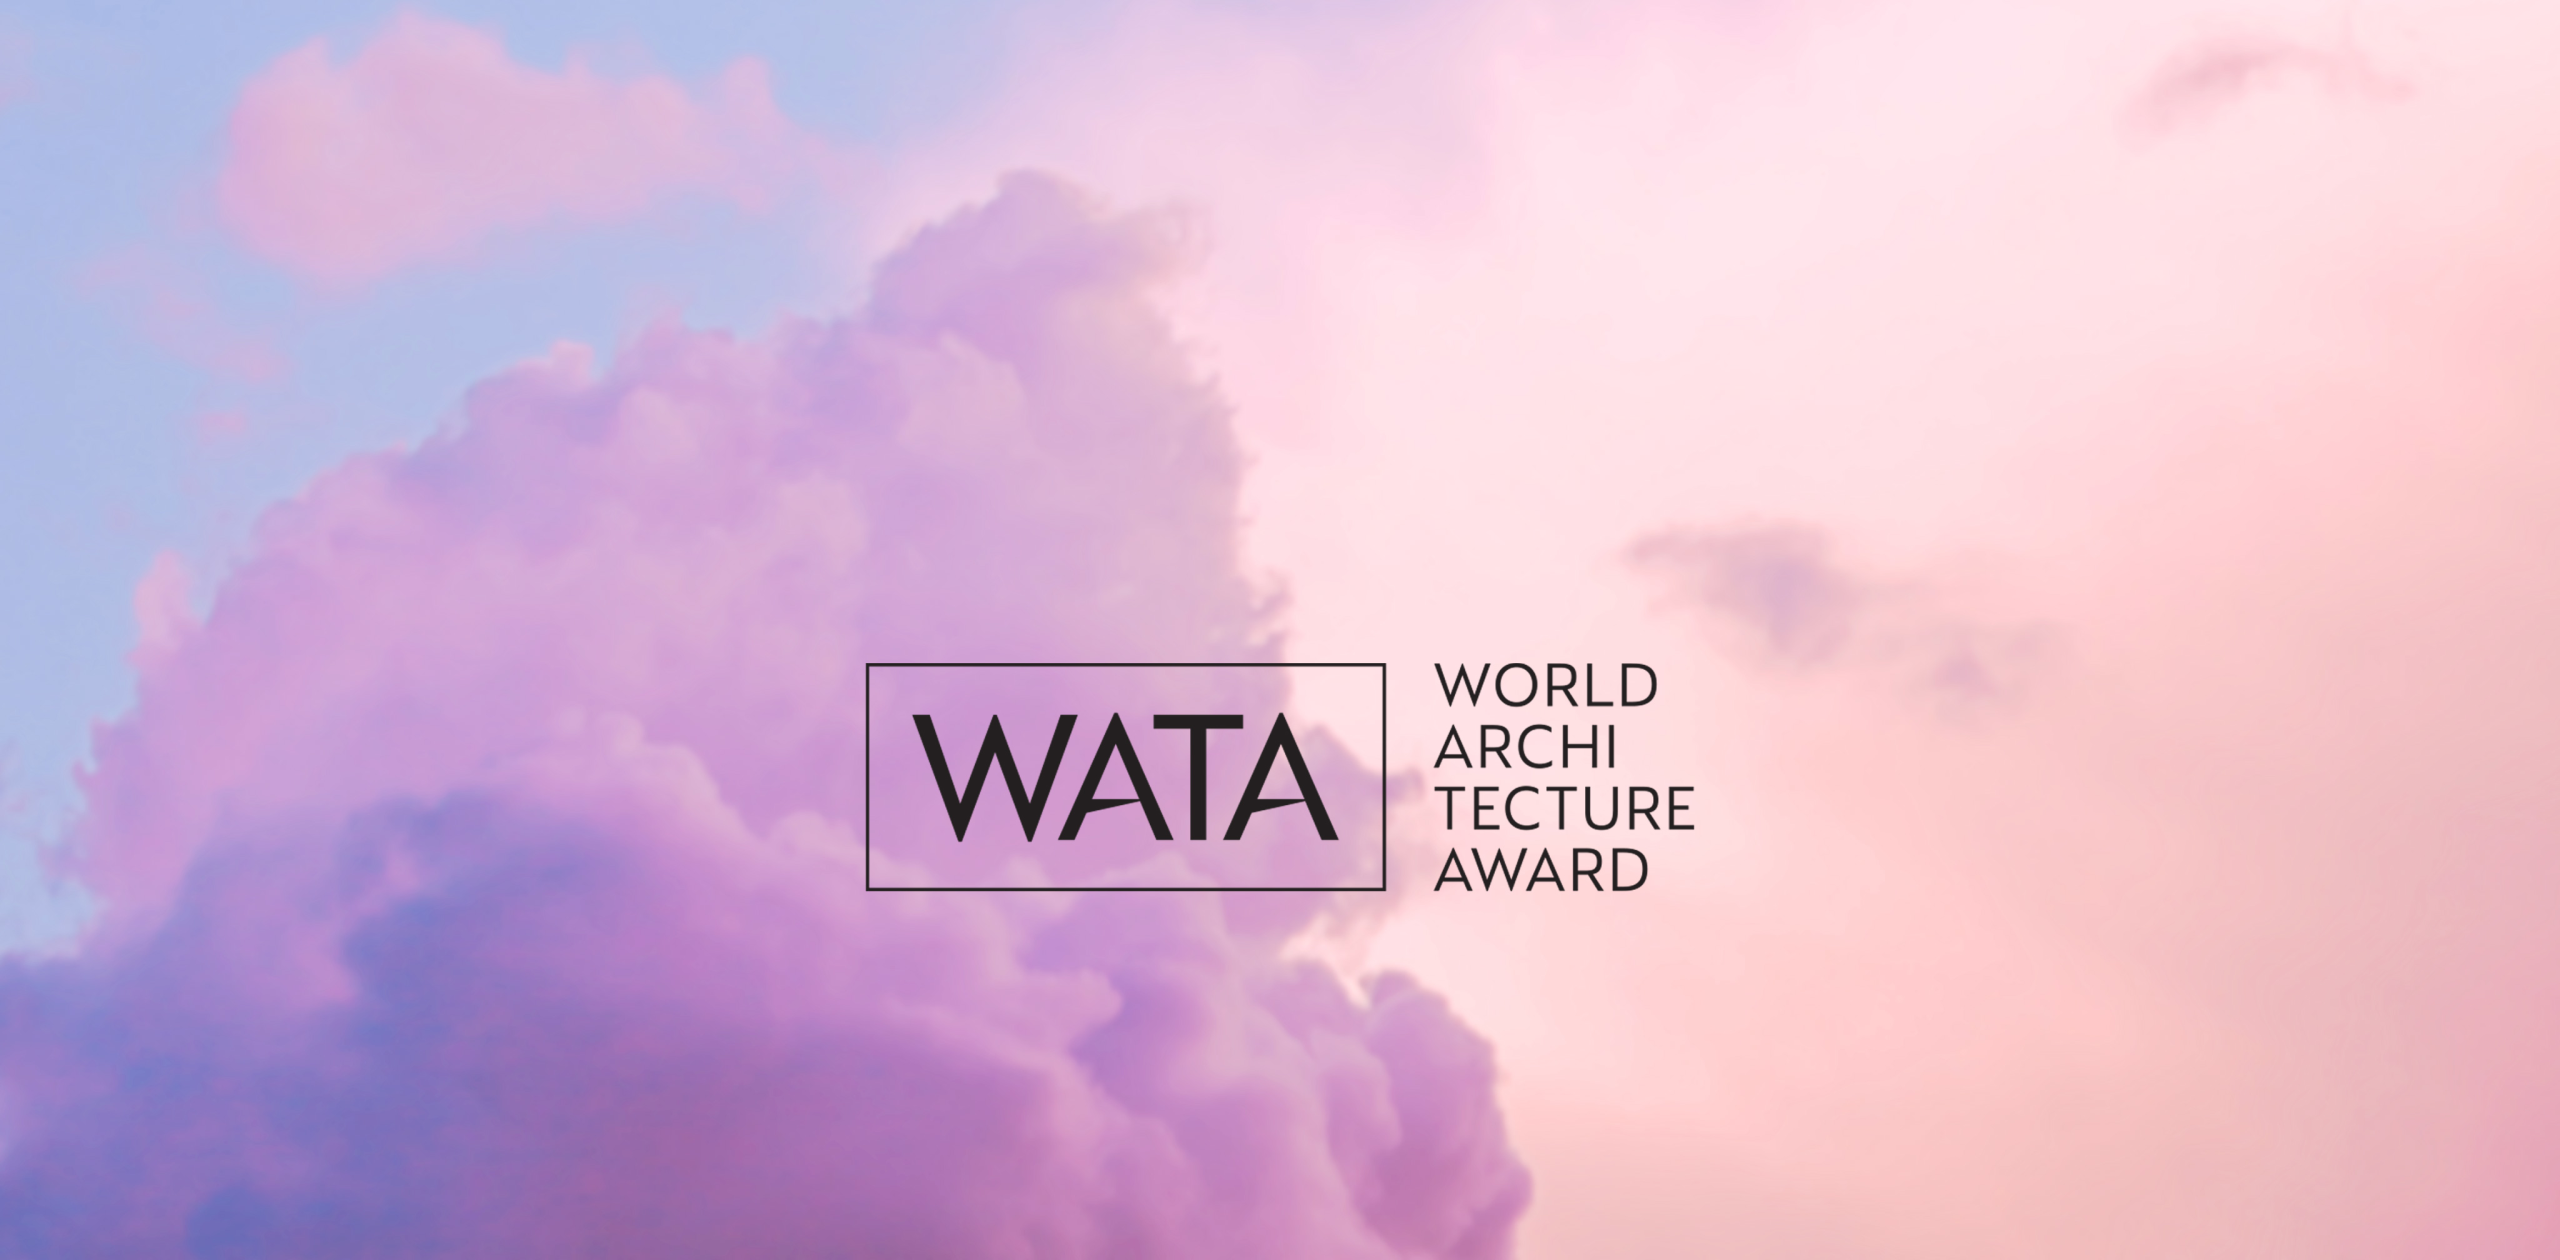 DOMAL PER IL PRIMO ANNO PRESENTE AL WATA – World Architecture Award